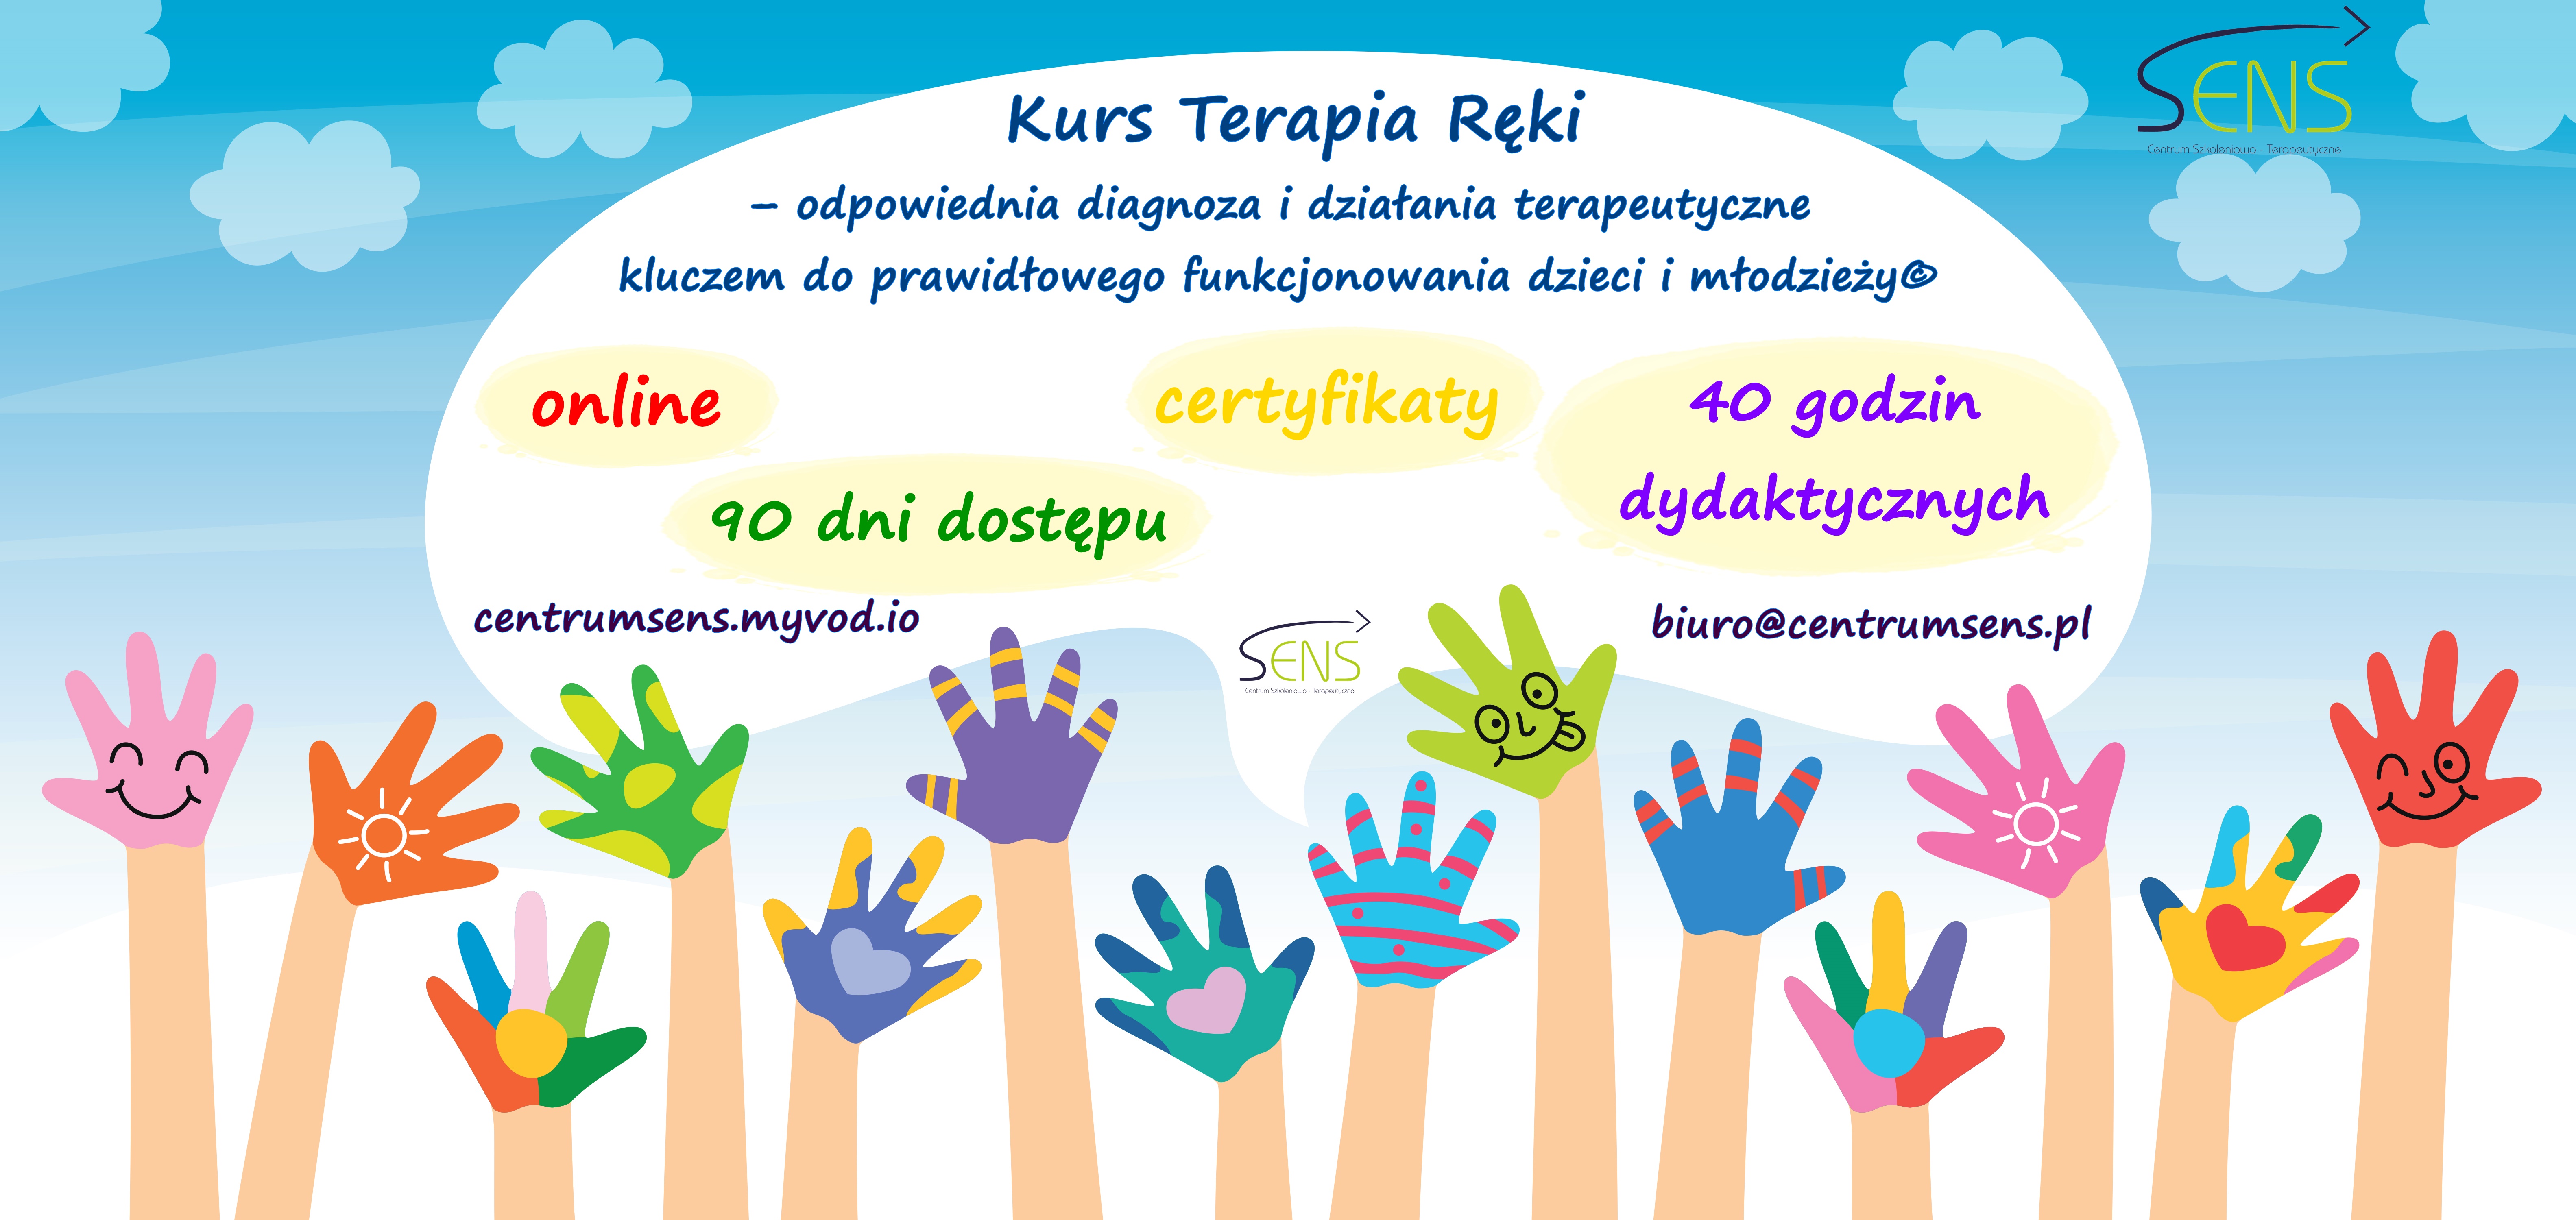 Kurs Terapia ręki dzieci i młodzieży© Kurs online. Dostęp 90 dni.